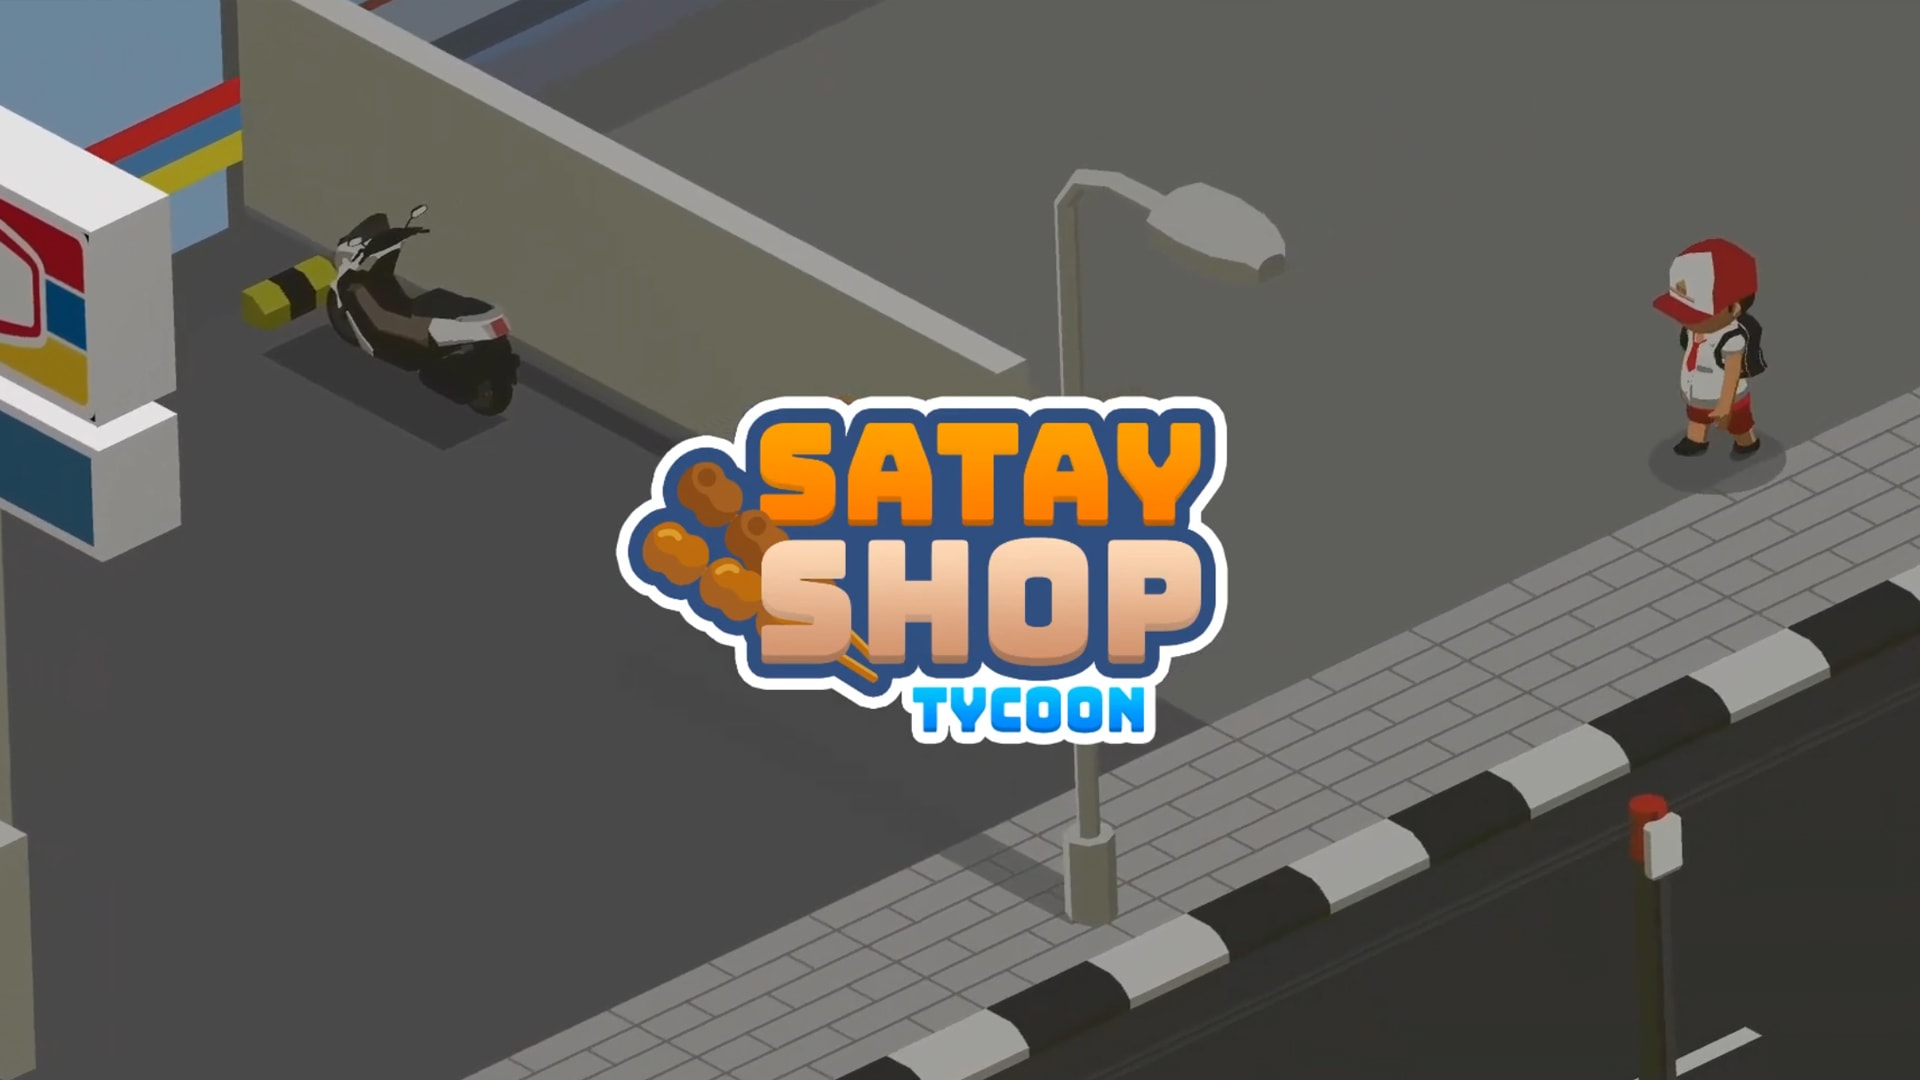  Satay Shop Tycoon